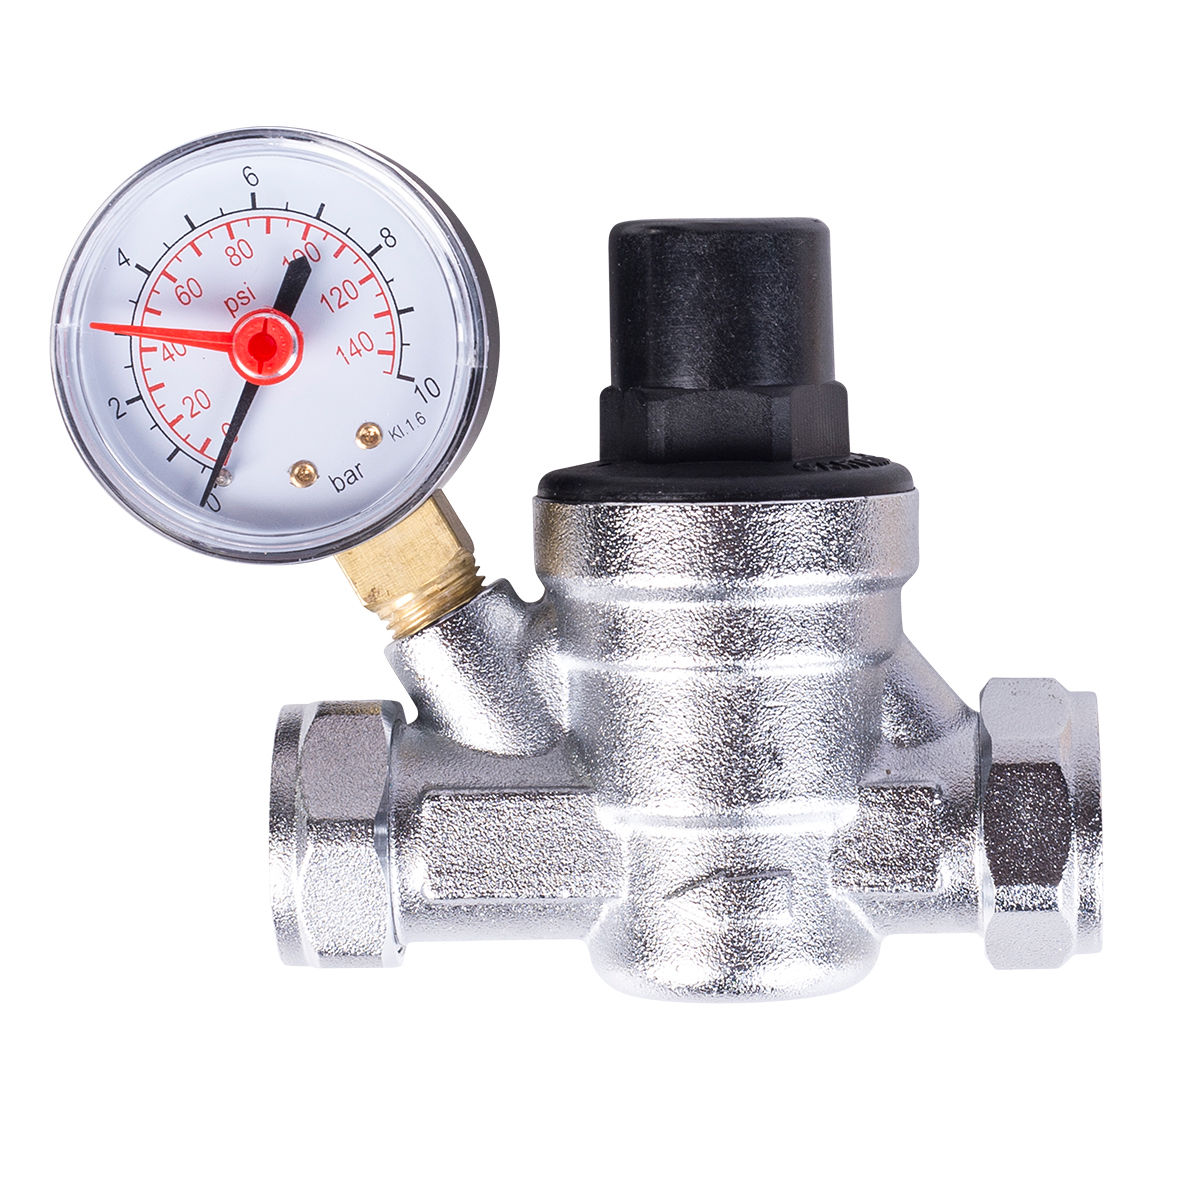 Boiler-m8 22mm Water Pressure Reducing Valve with Gauge